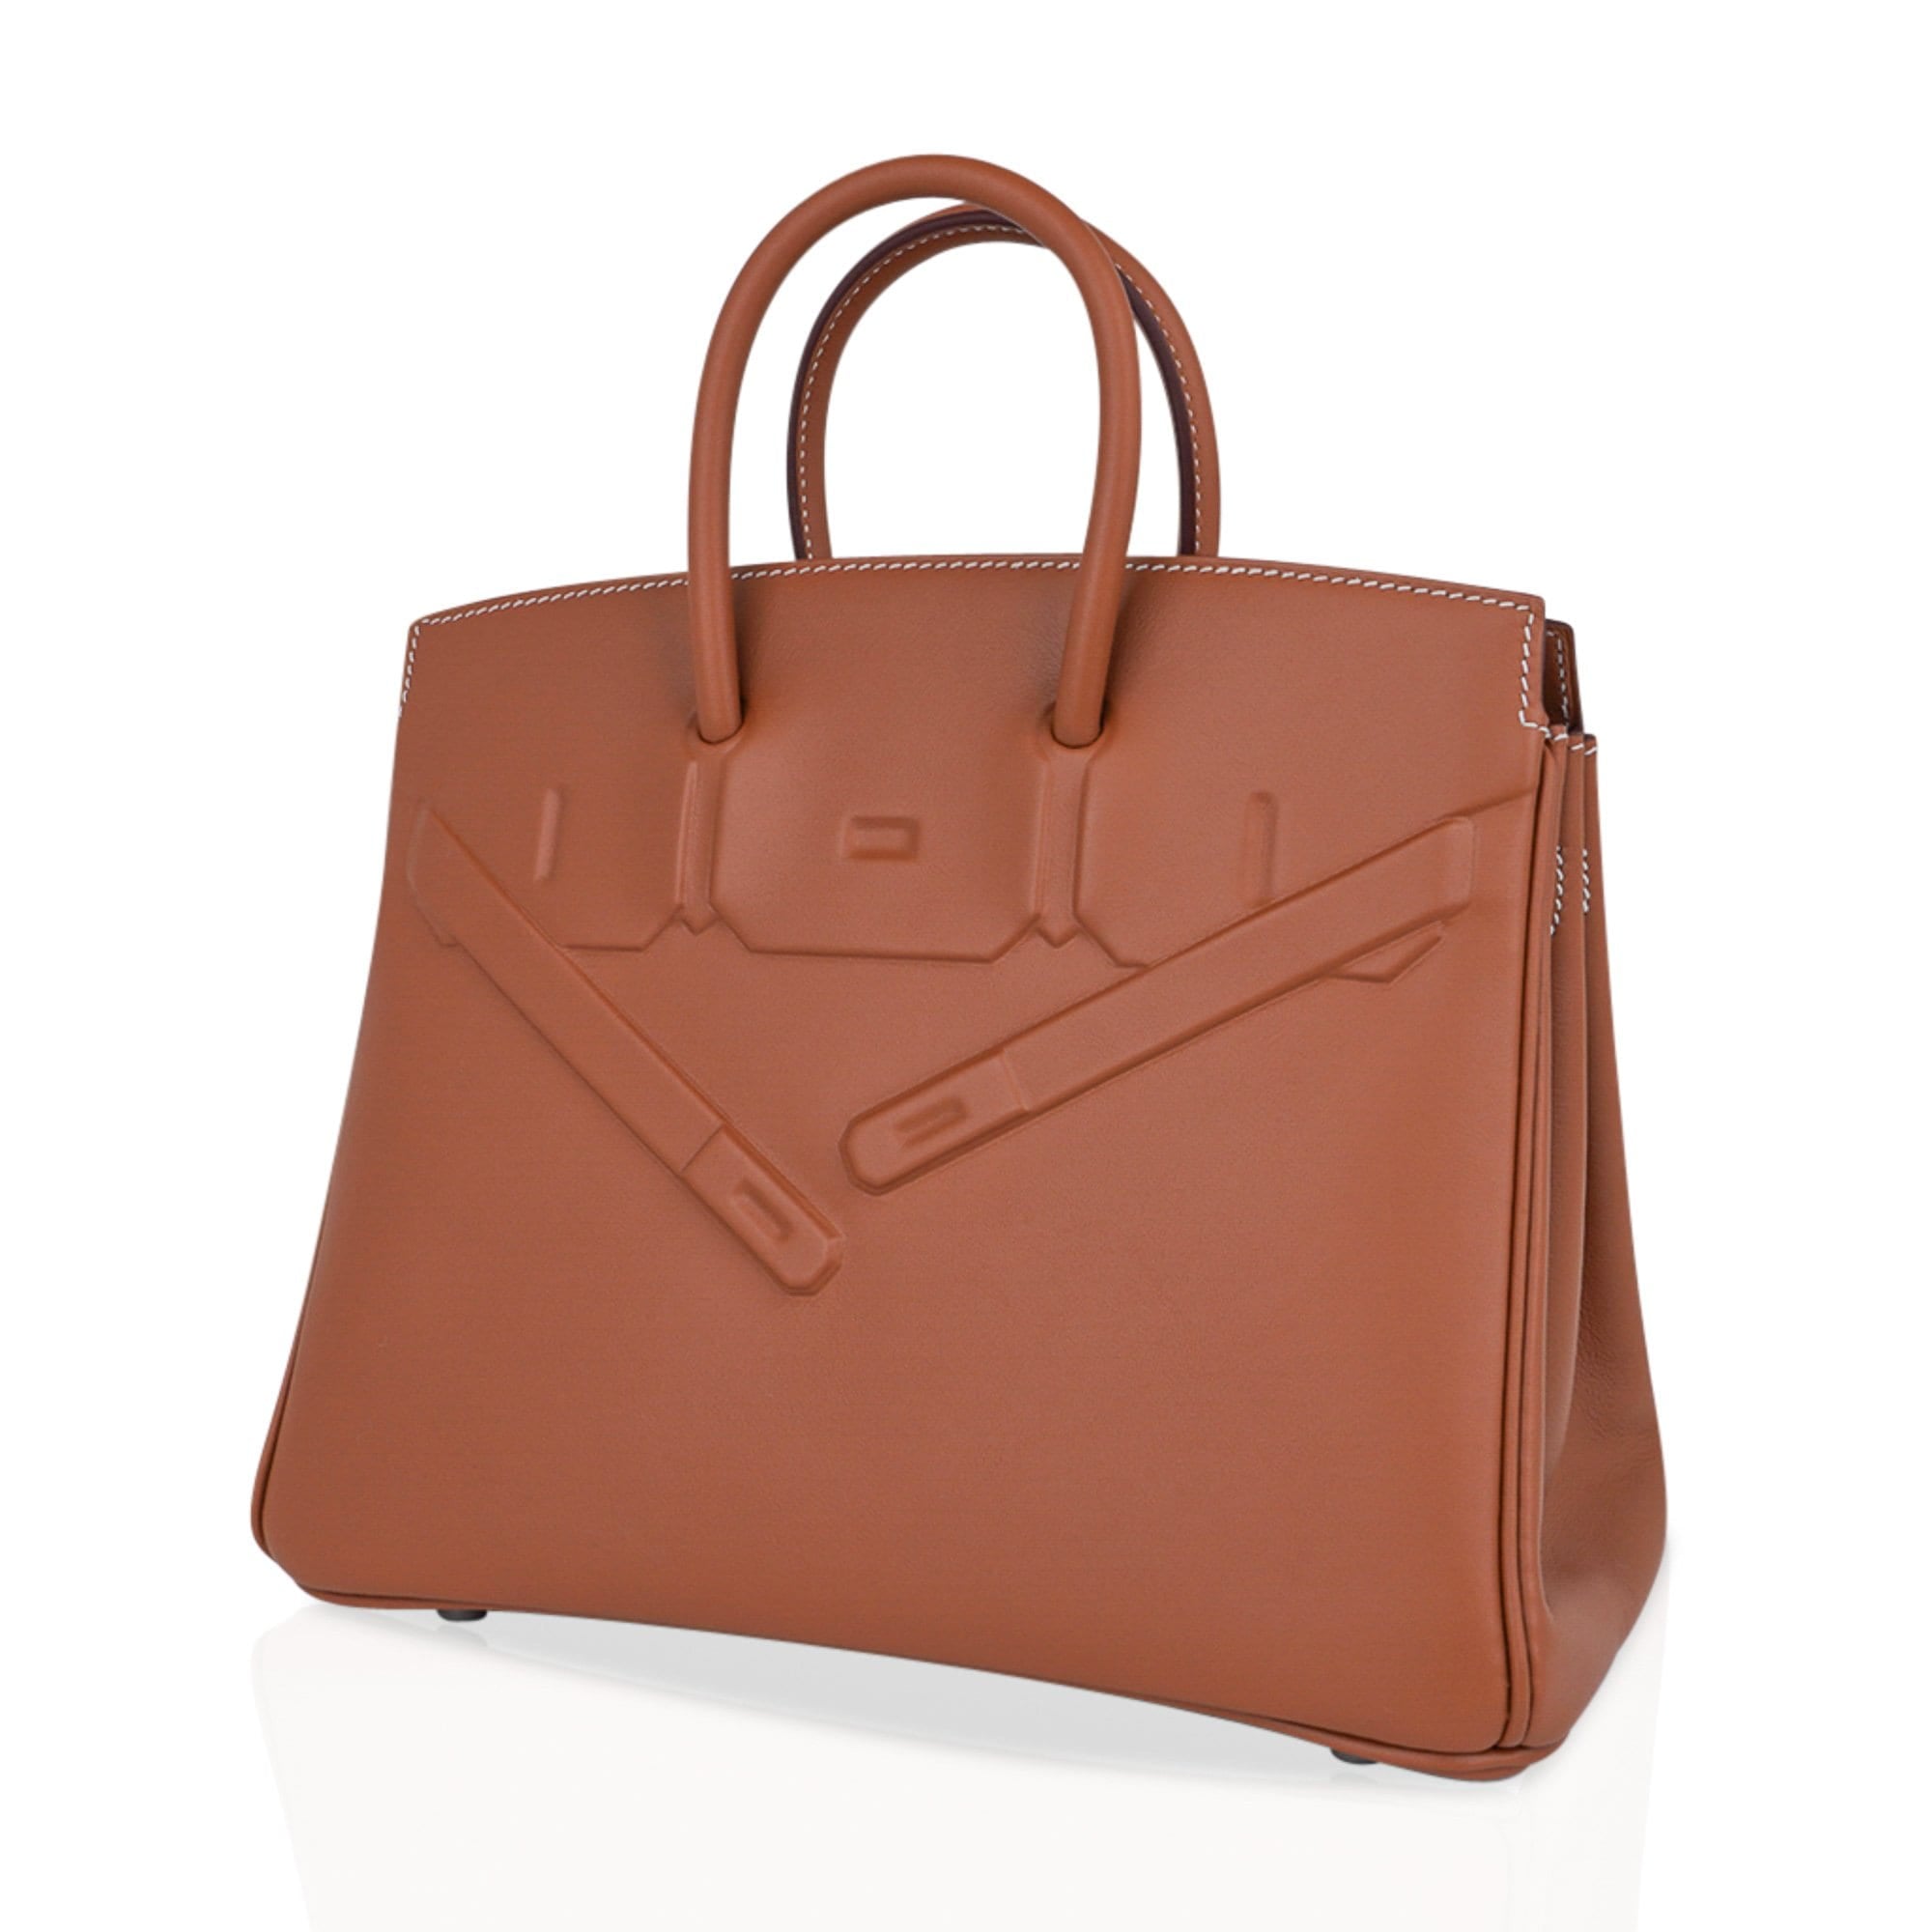 Hermes Birkin Shadow Handbag